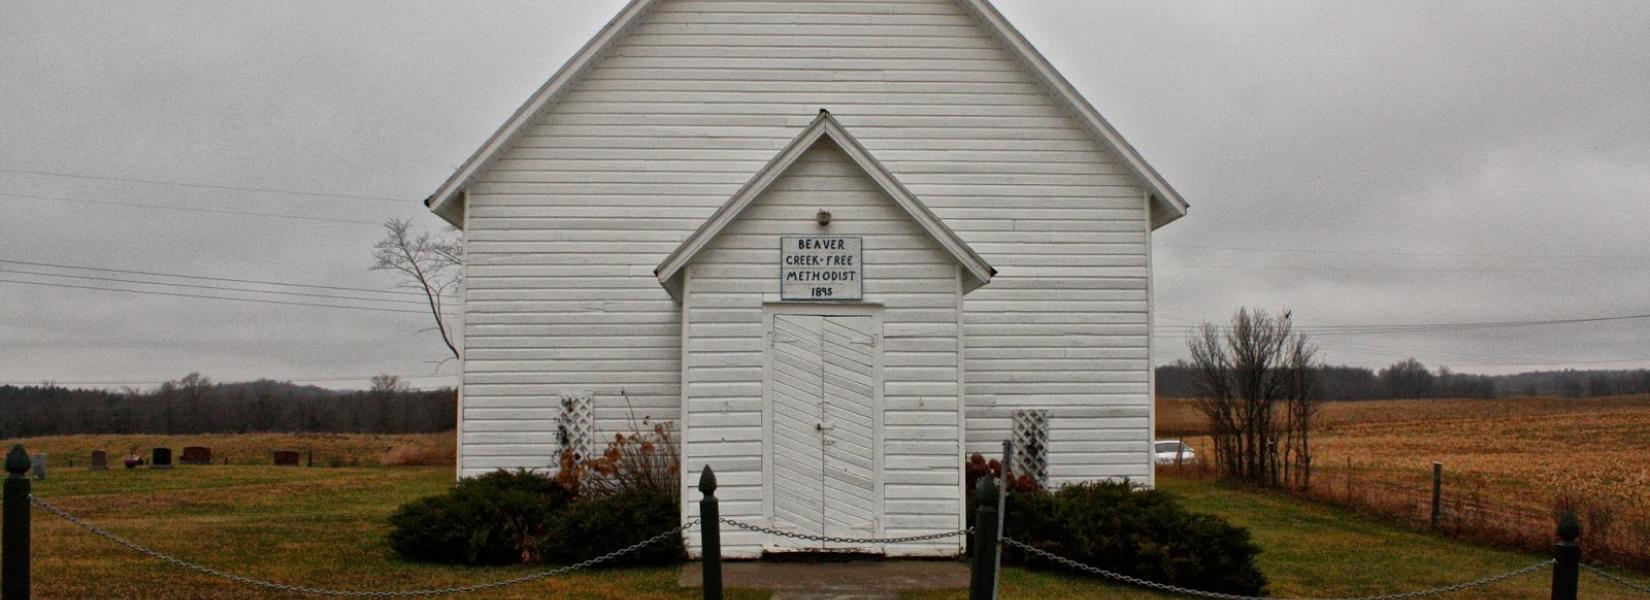 L'église méthodiste presque abandonnée de Beaver Creek